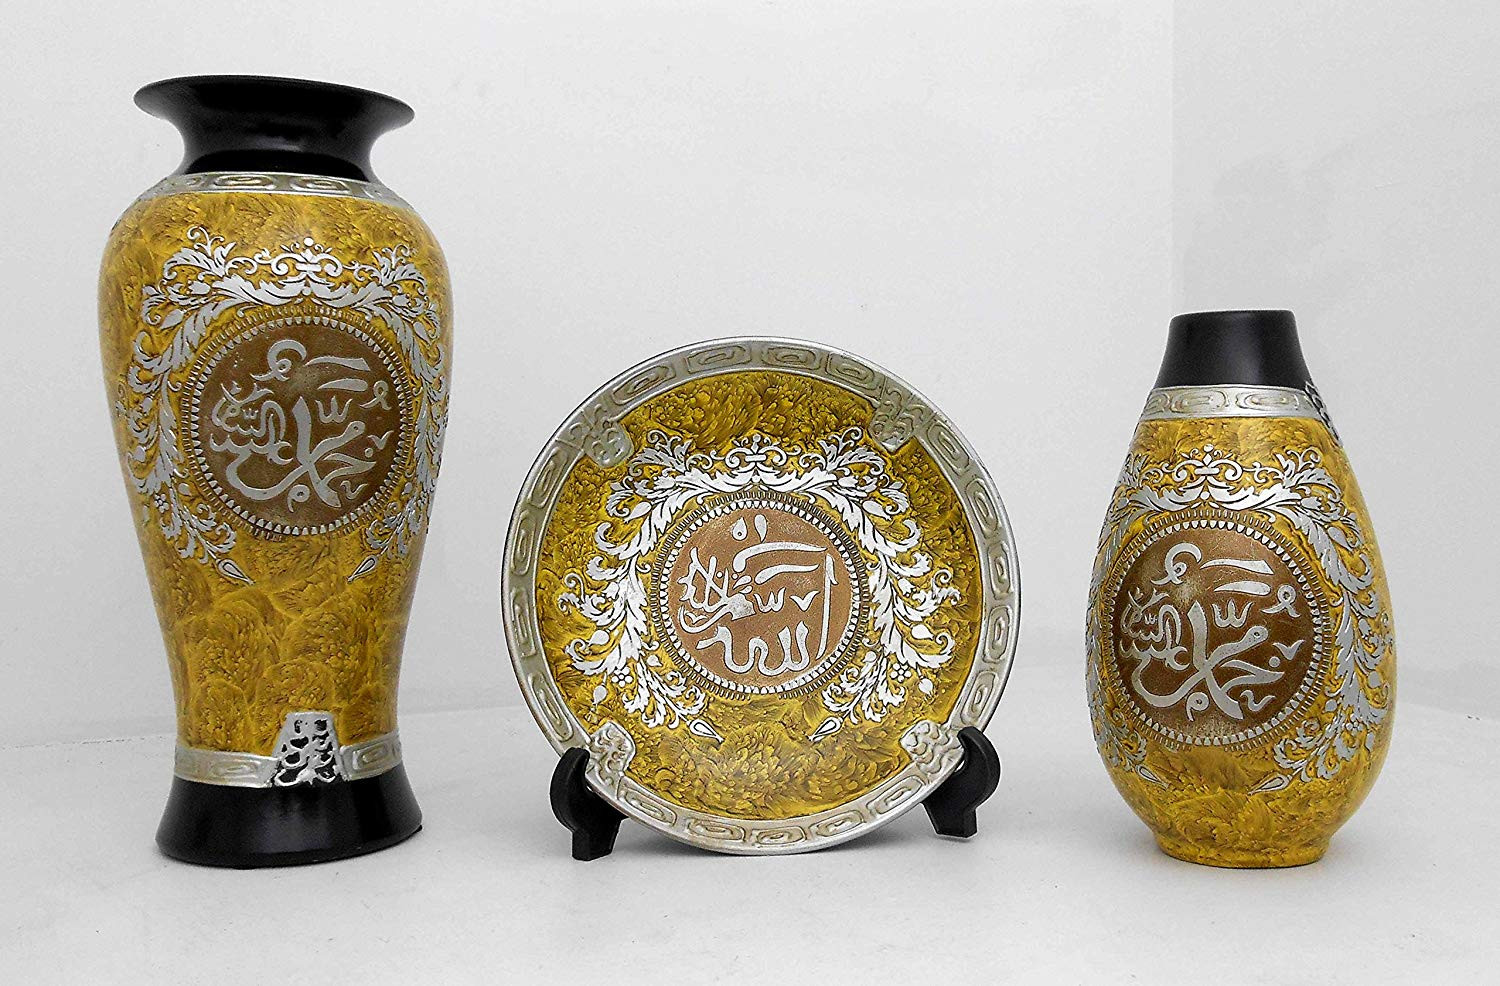 ceramic flower vases wholesale of amazon com islamic muslim set brown ceramic vase allah mohammad within amazon com islamic muslim set brown ceramic vase allah mohammad home decorative 1657 home kitchen